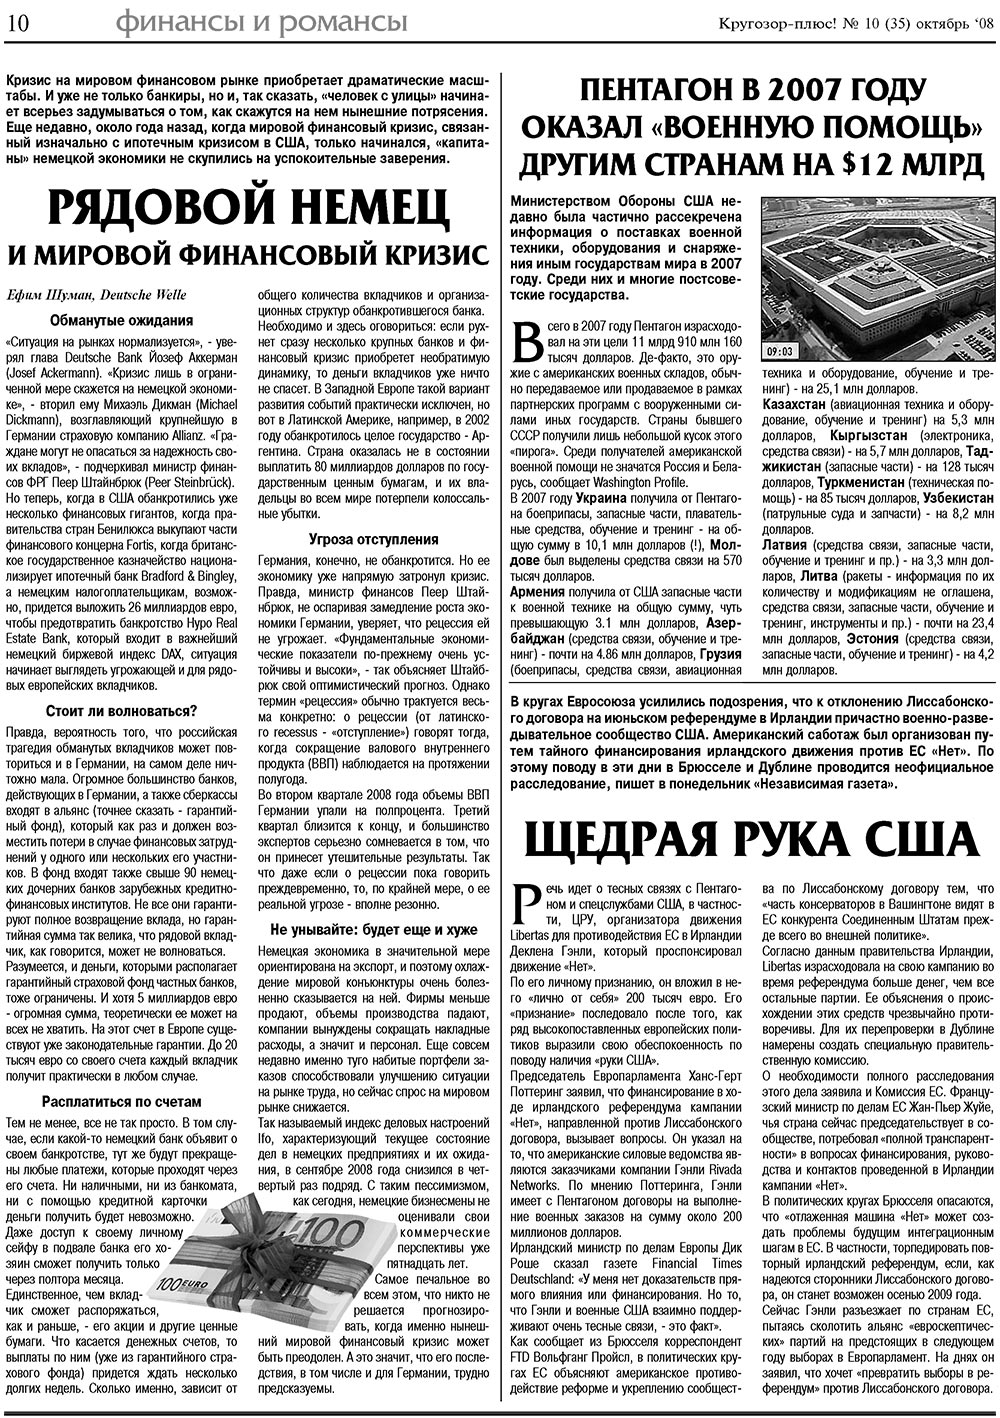 Krugozor plus! (Zeitung). 2008 Jahr, Ausgabe 10, Seite 10